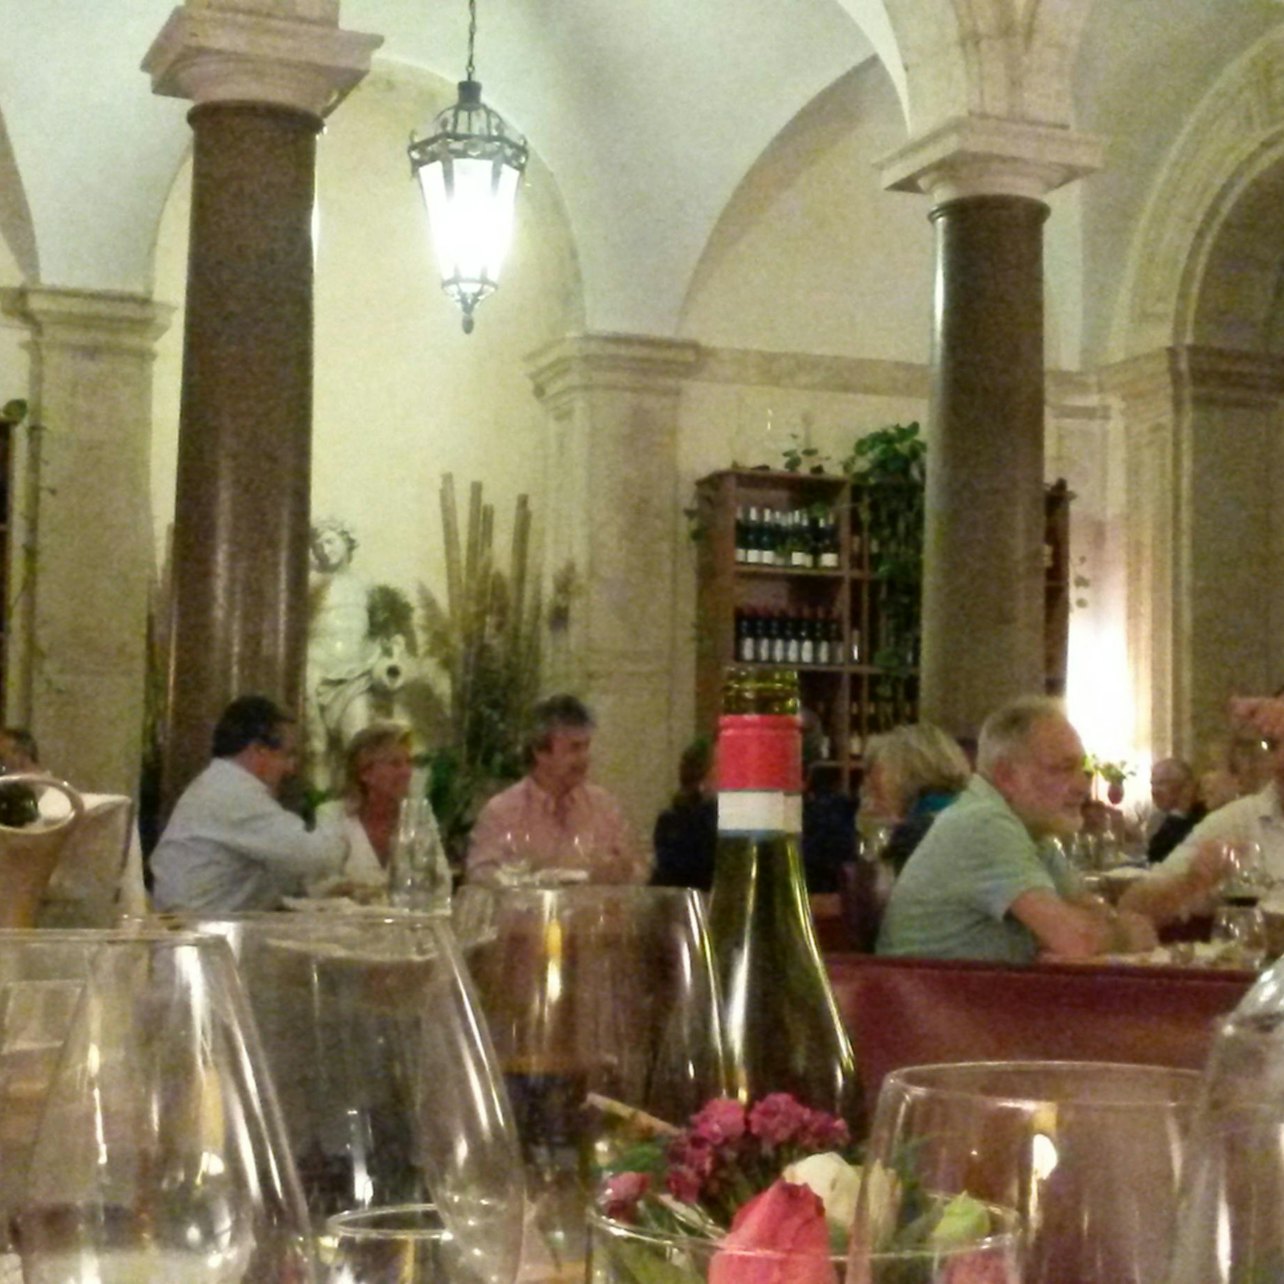 Roma: Jantar Gourmet de Luxo com Emparelhamento de Vinhos - Acomodações em Roma